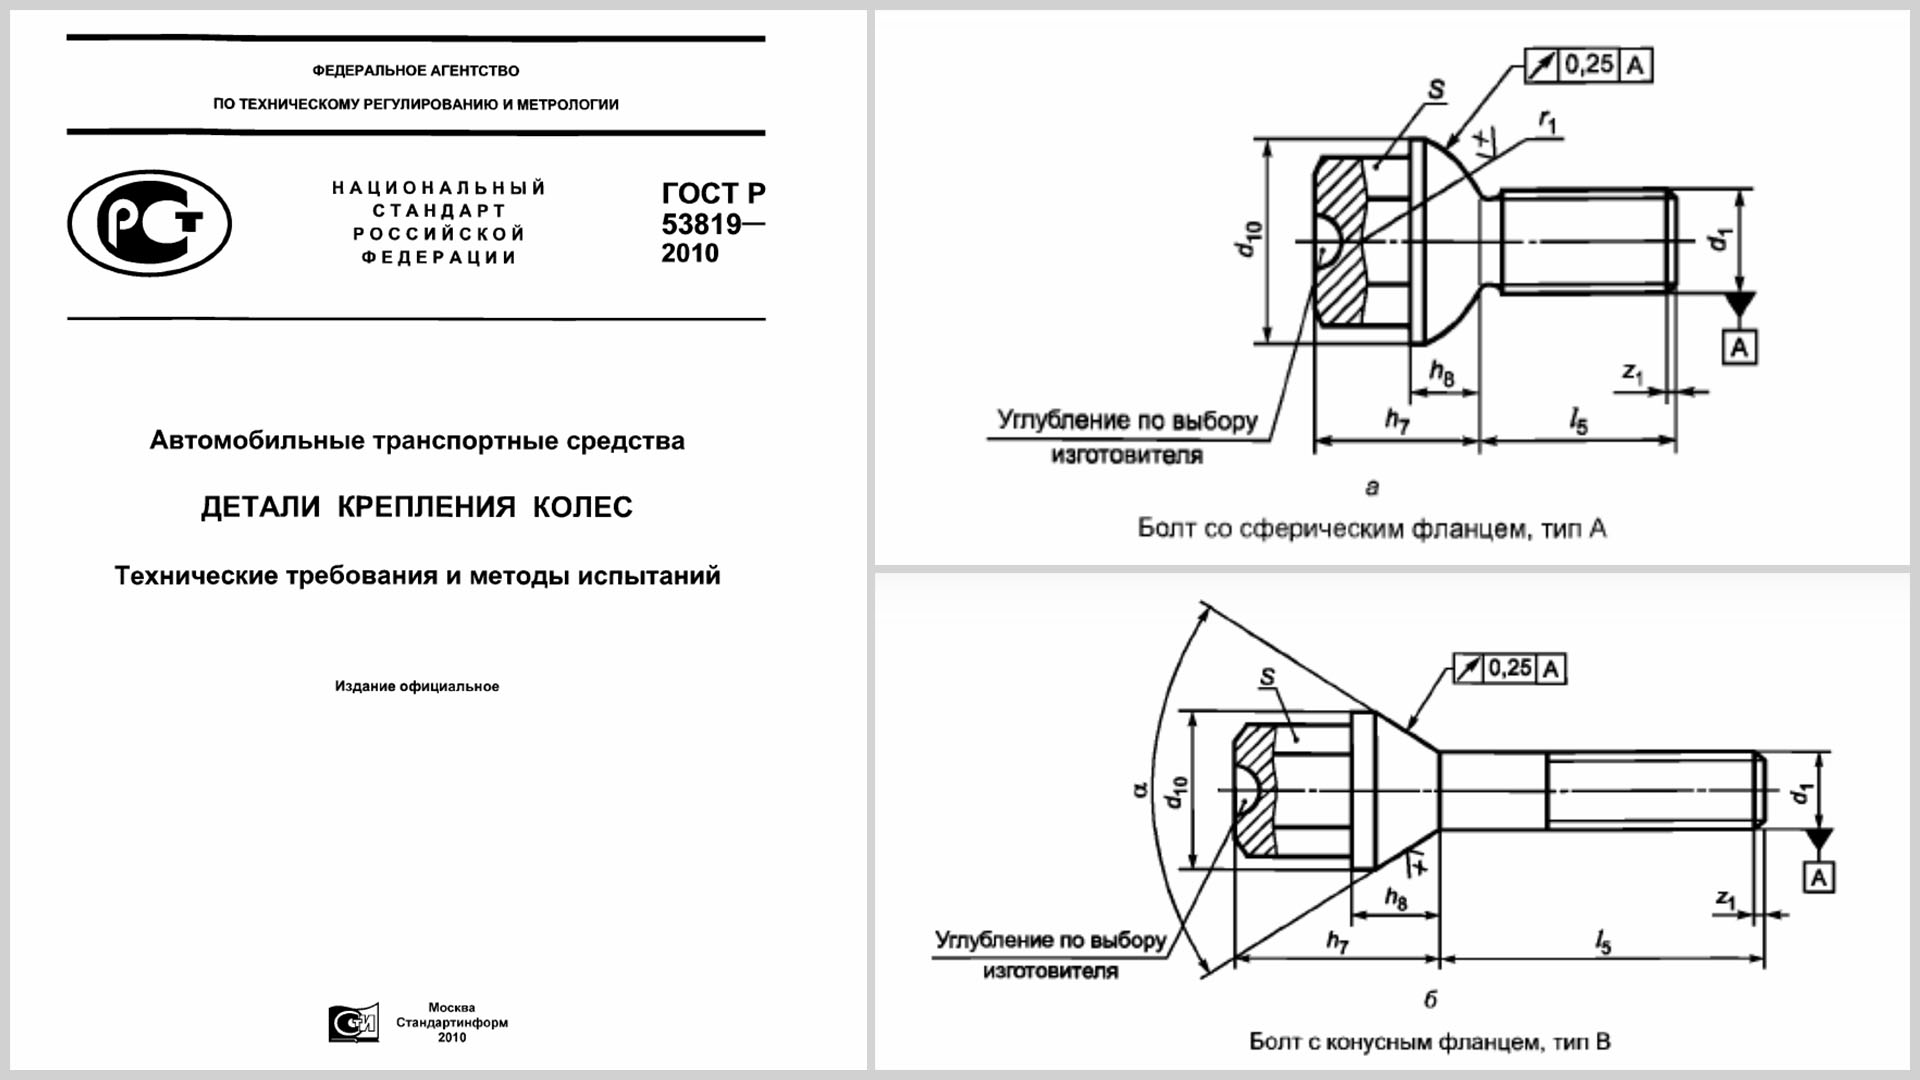 Фрагмент ГОСТа регламентирующего требования к деталям крепления колёс и чертежи болтов.